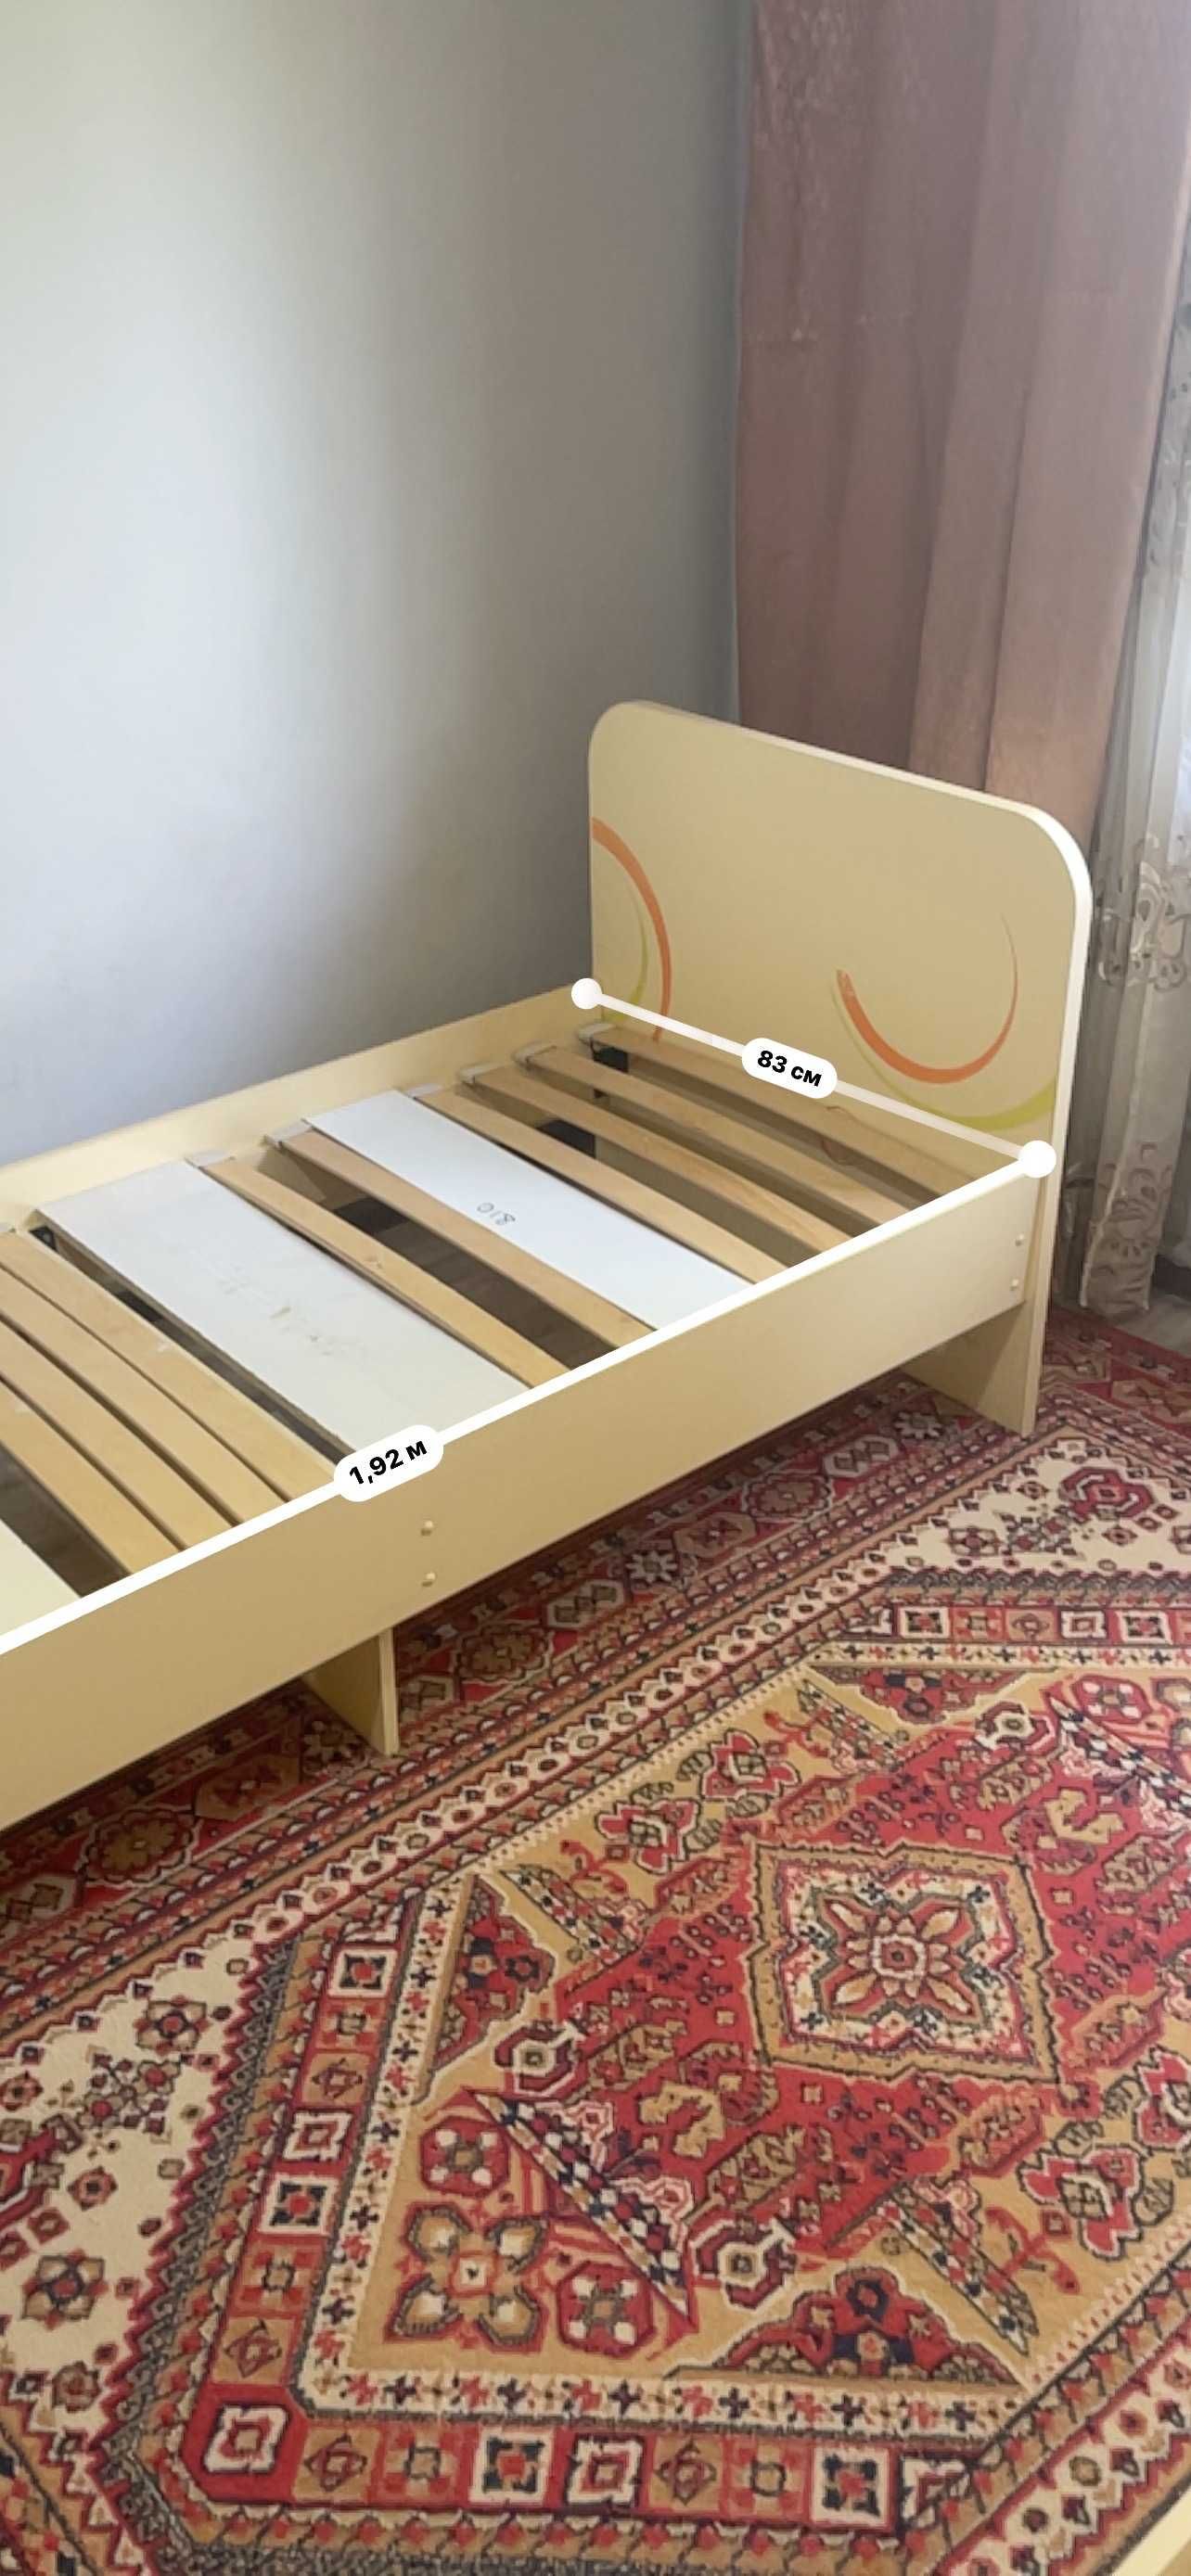 1-спальная кровать подростковая можно и для взрослых